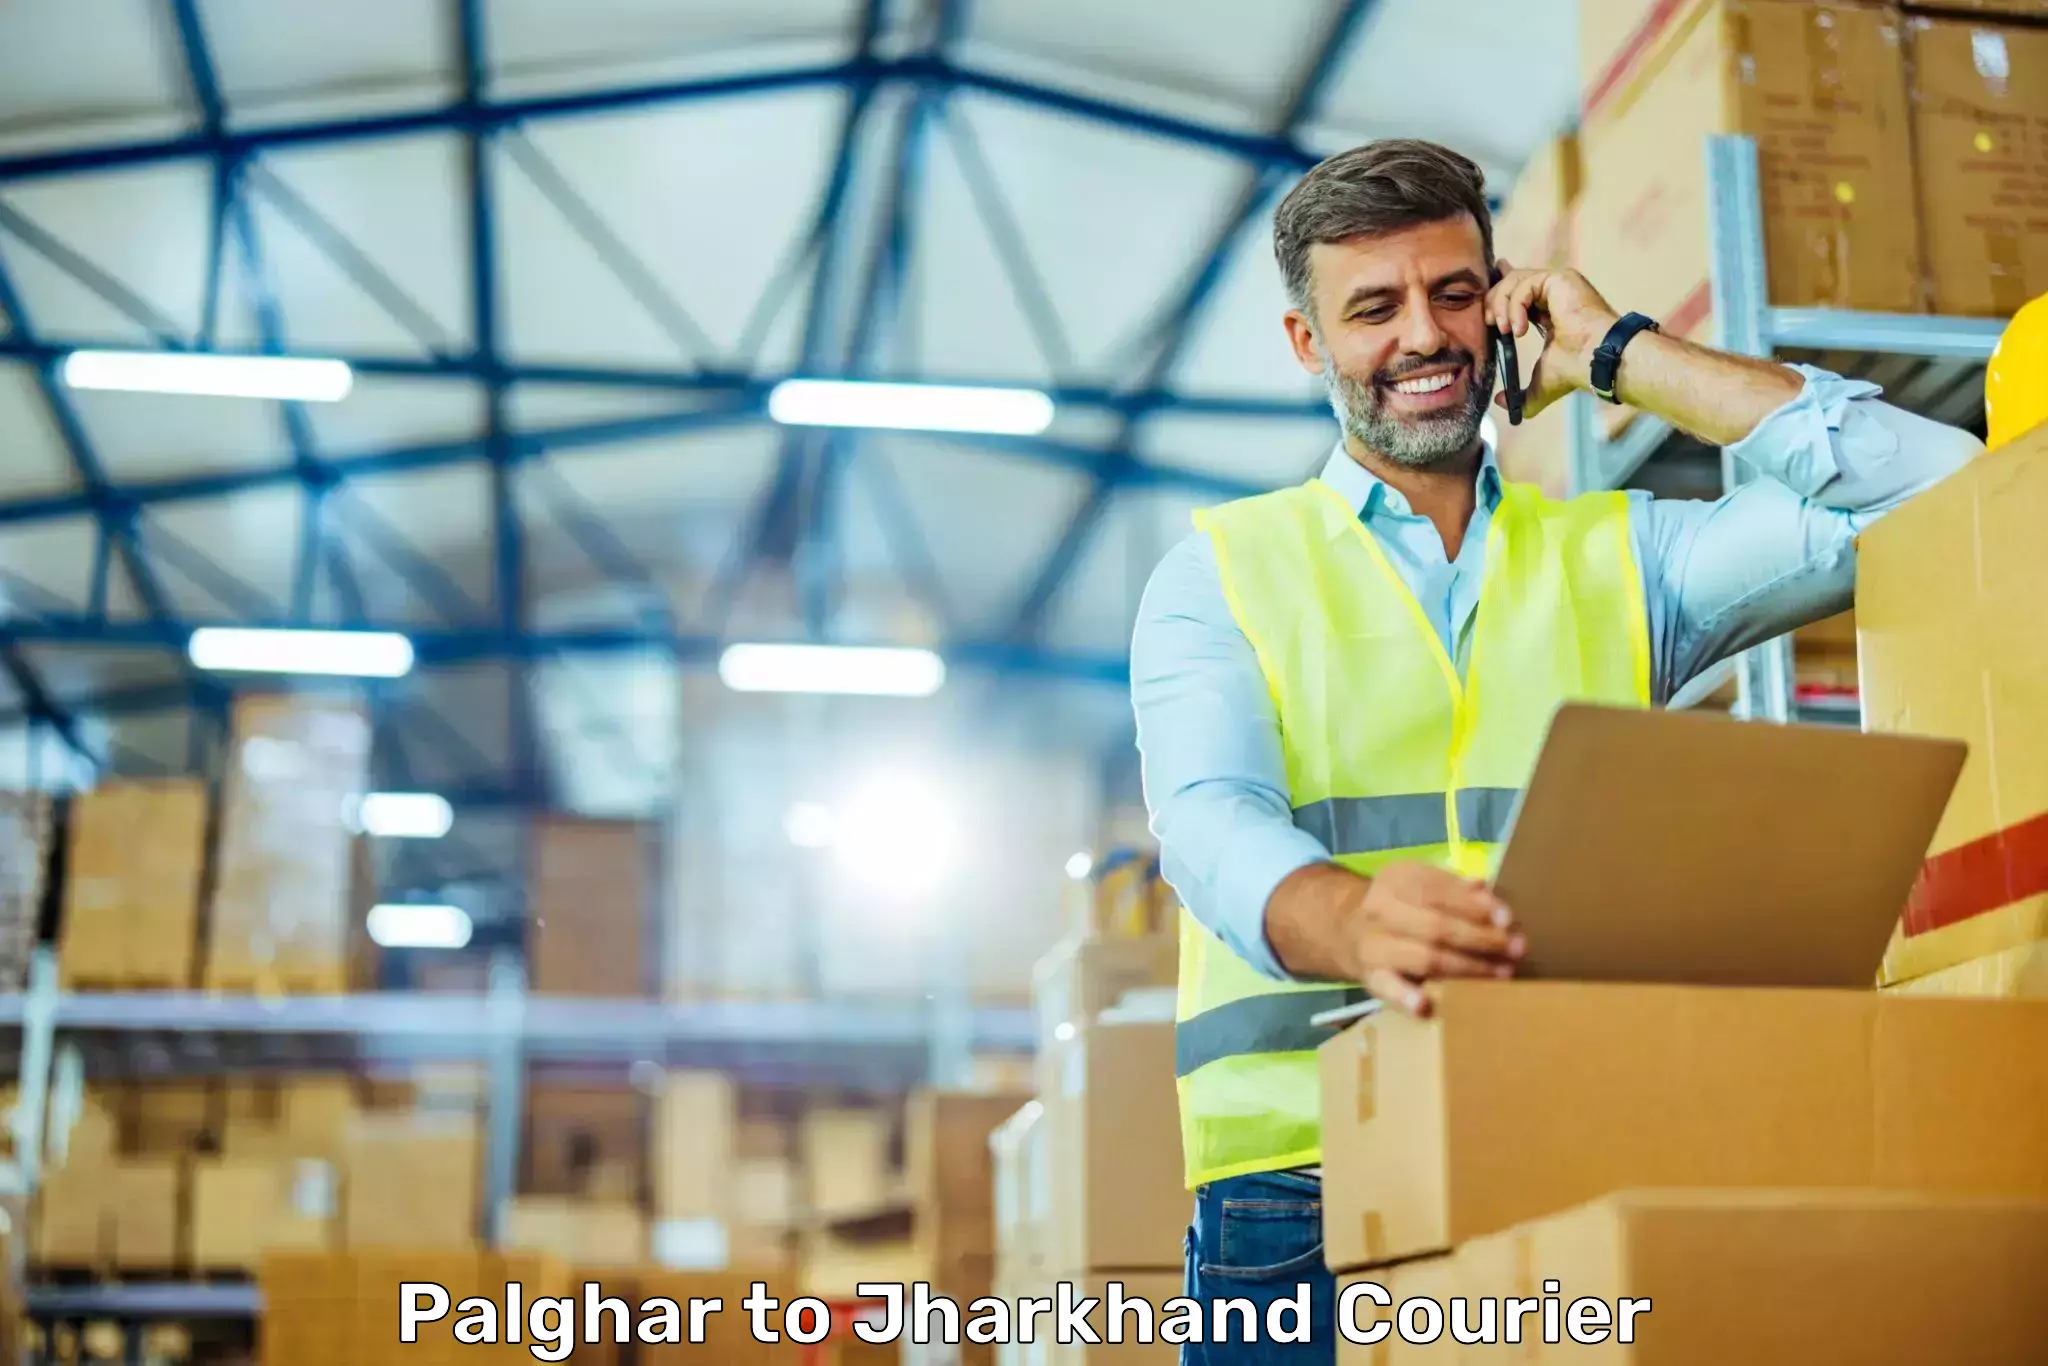 On-call courier service Palghar to Medininagar